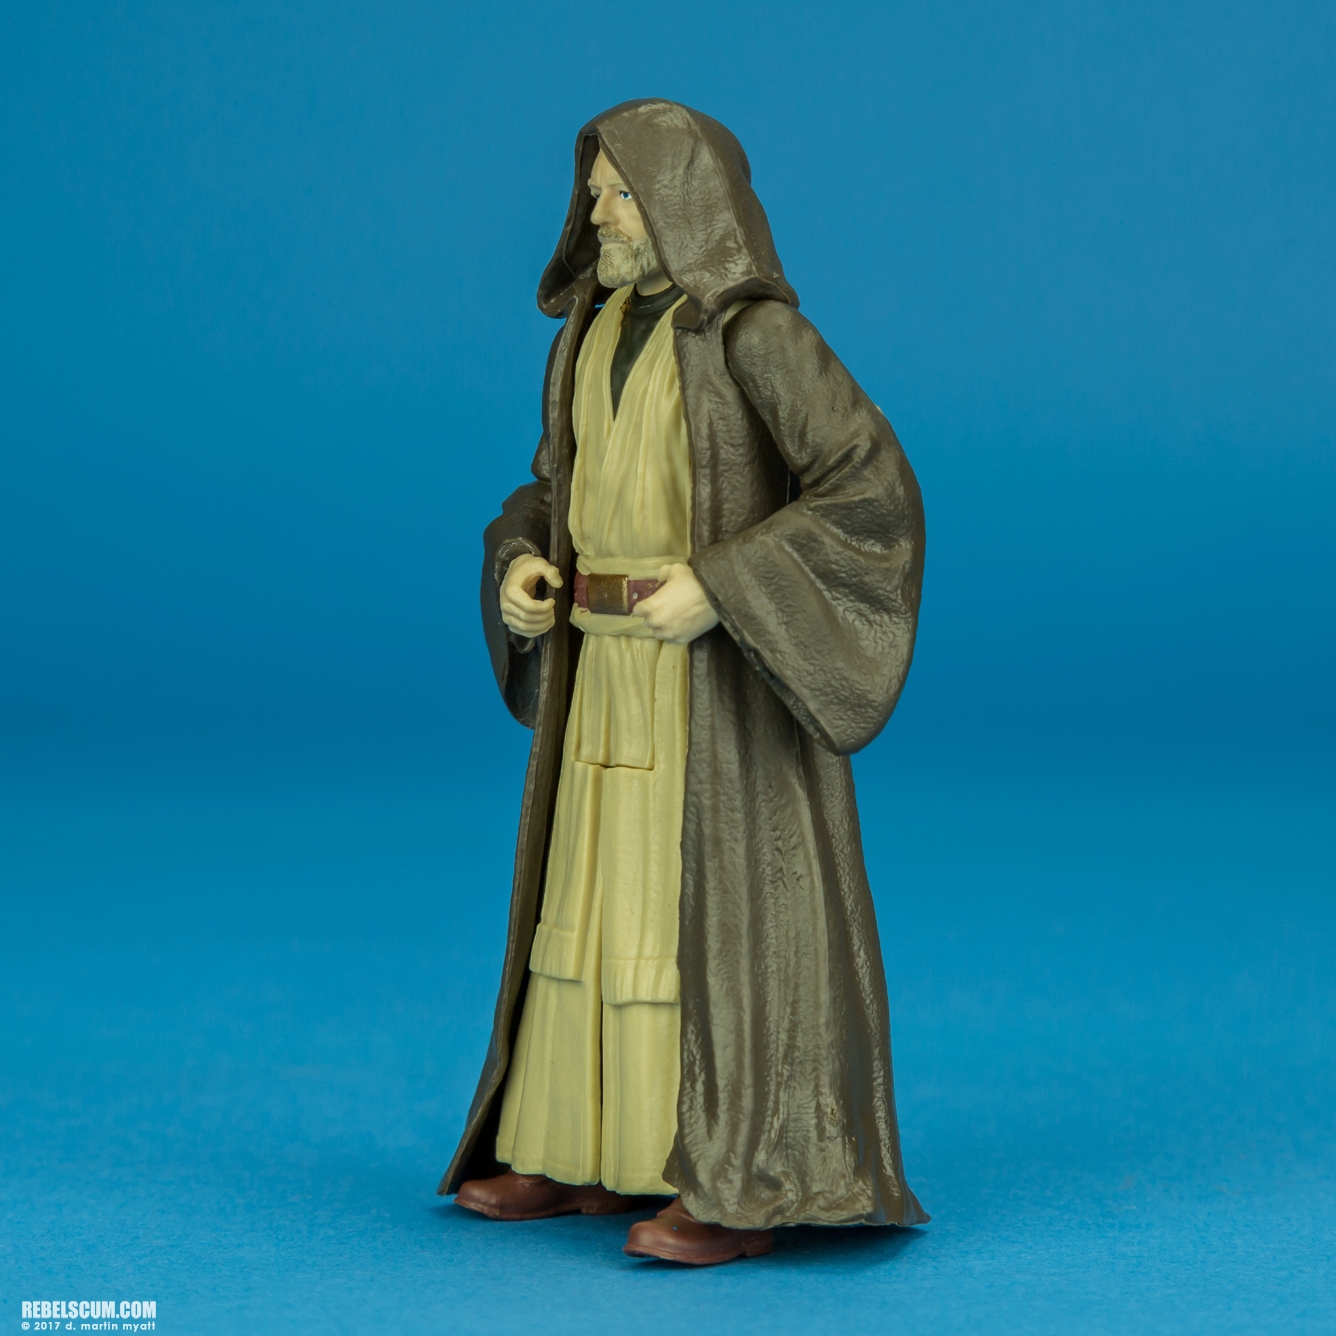 Obi-Wan-Kenobi-Star-Wars-Universe-The-Last-Jedi-003.jpg